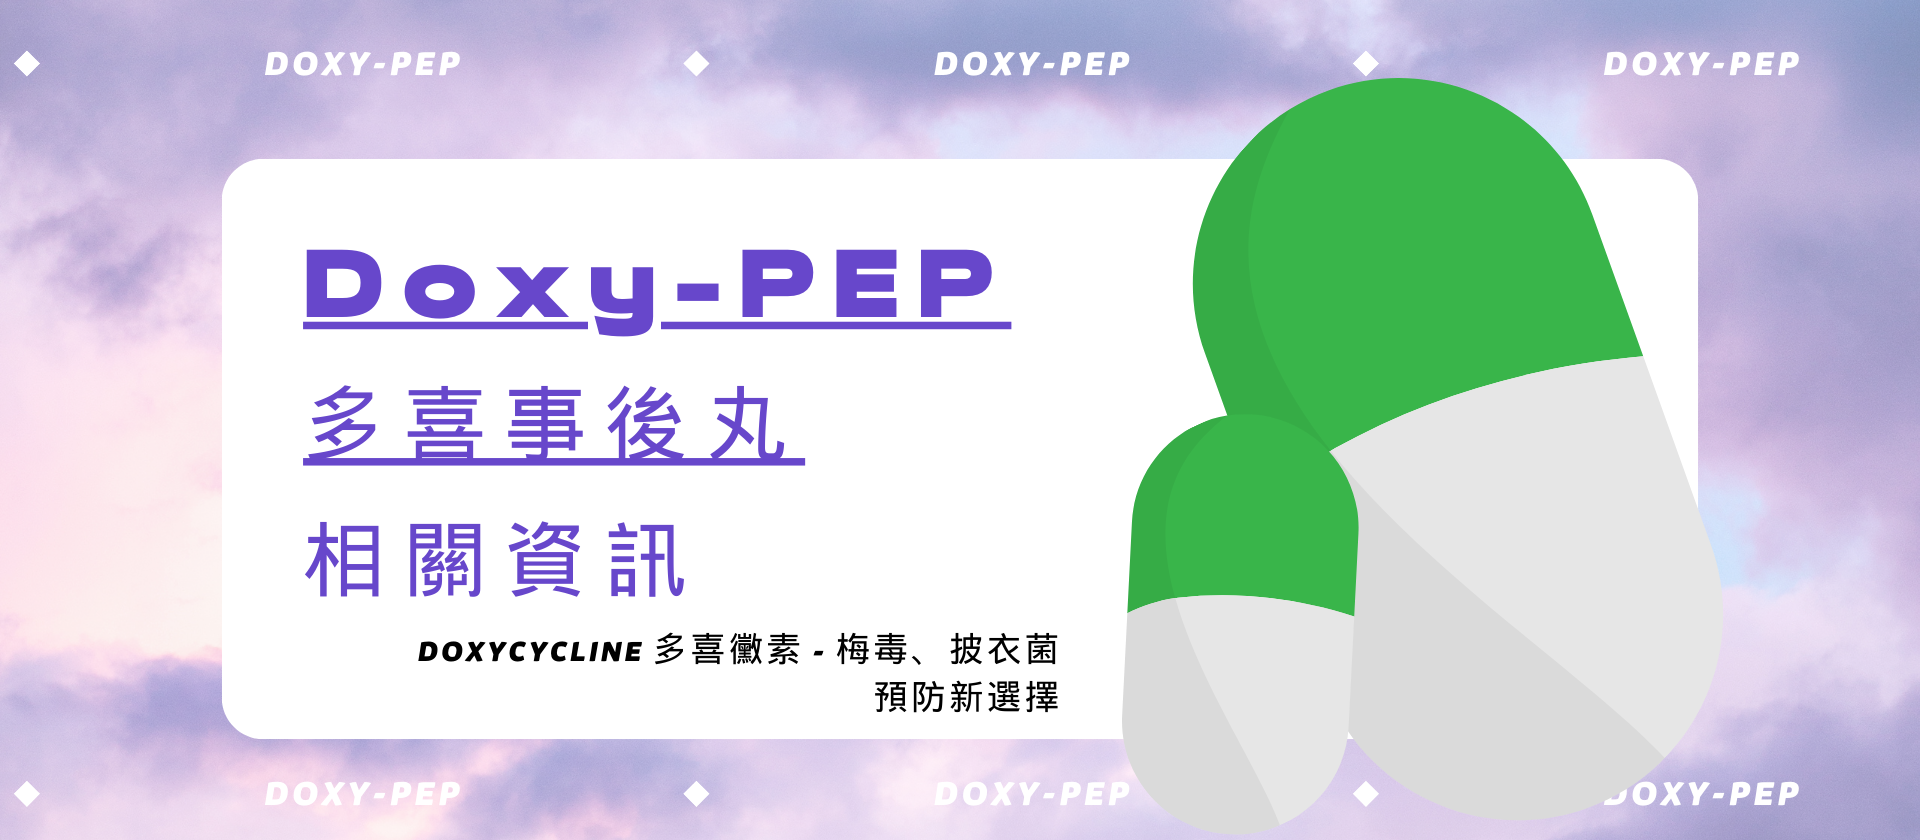 Doxy-PEP（多喜事後丸）相關資訊 - Doxycycline 多喜黴素 - 梅毒、披衣菌預防新選擇